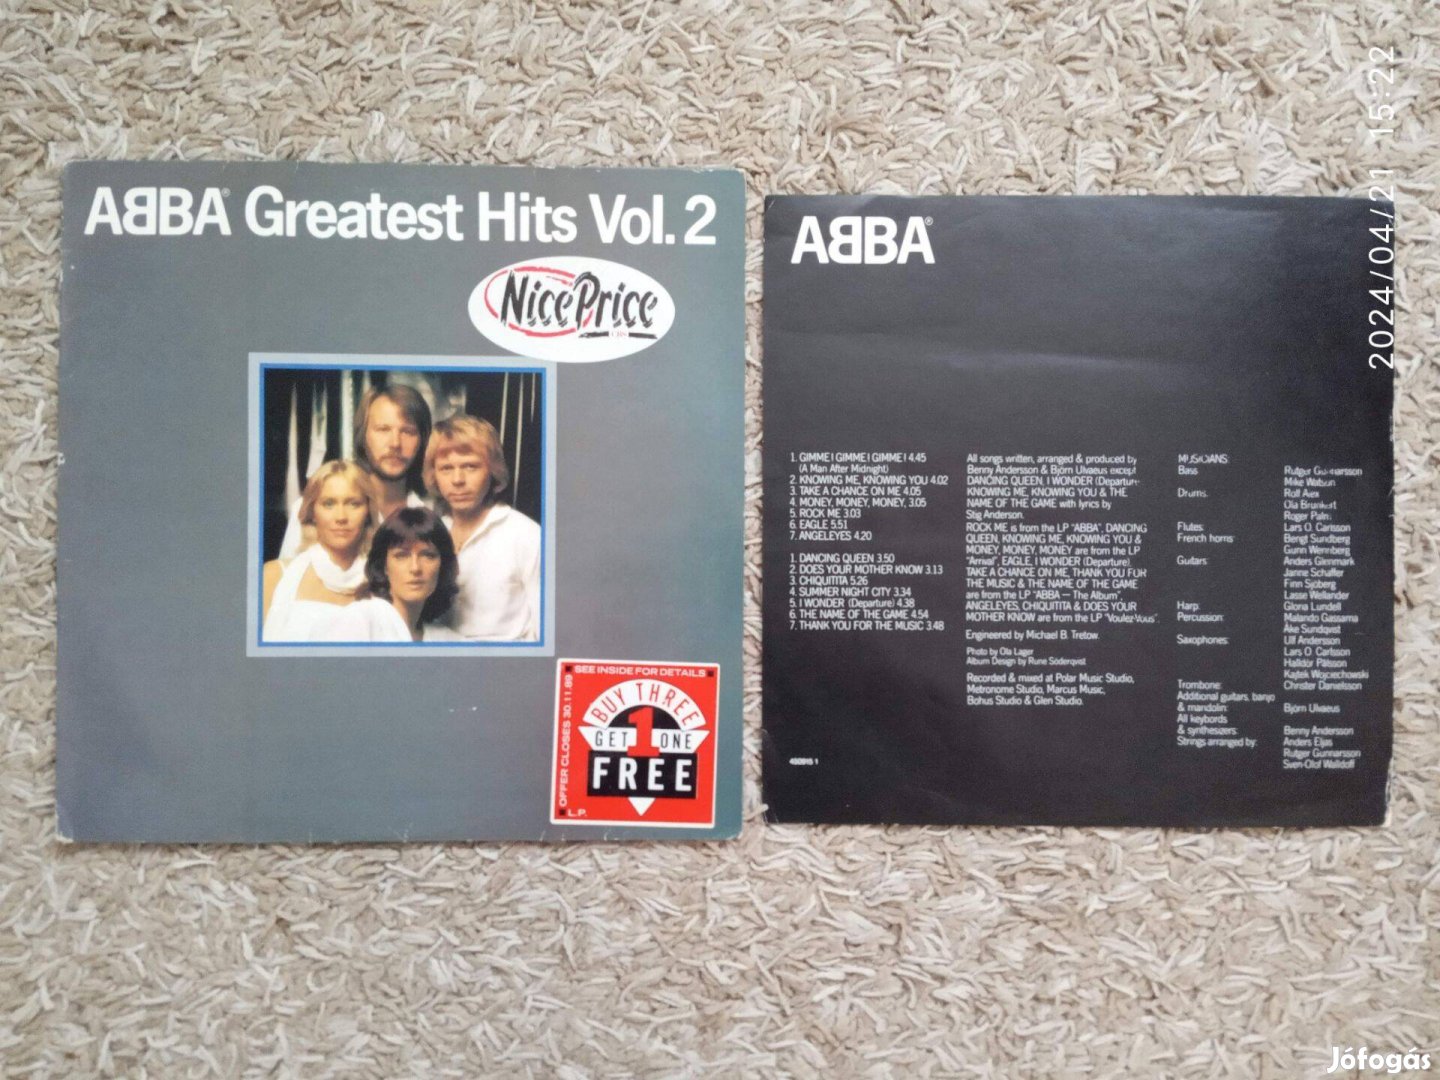 ABBA - Greatest Hits Vol. 2 (angol kiadás)